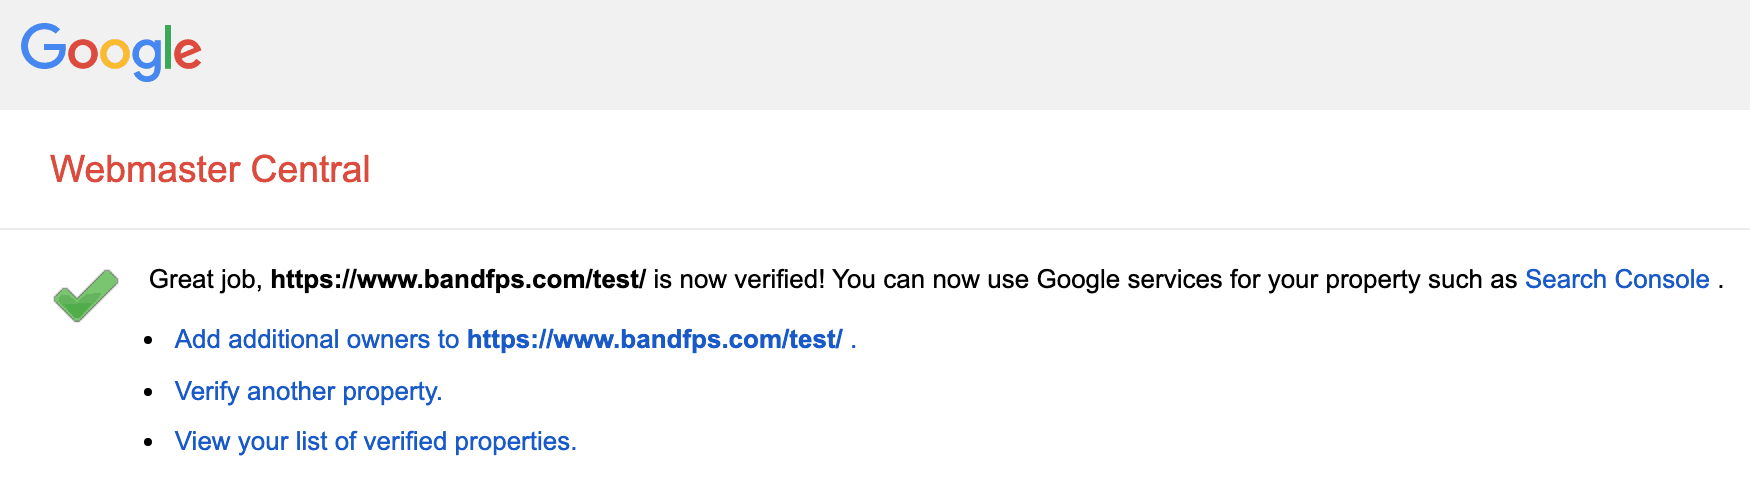 google site verification success